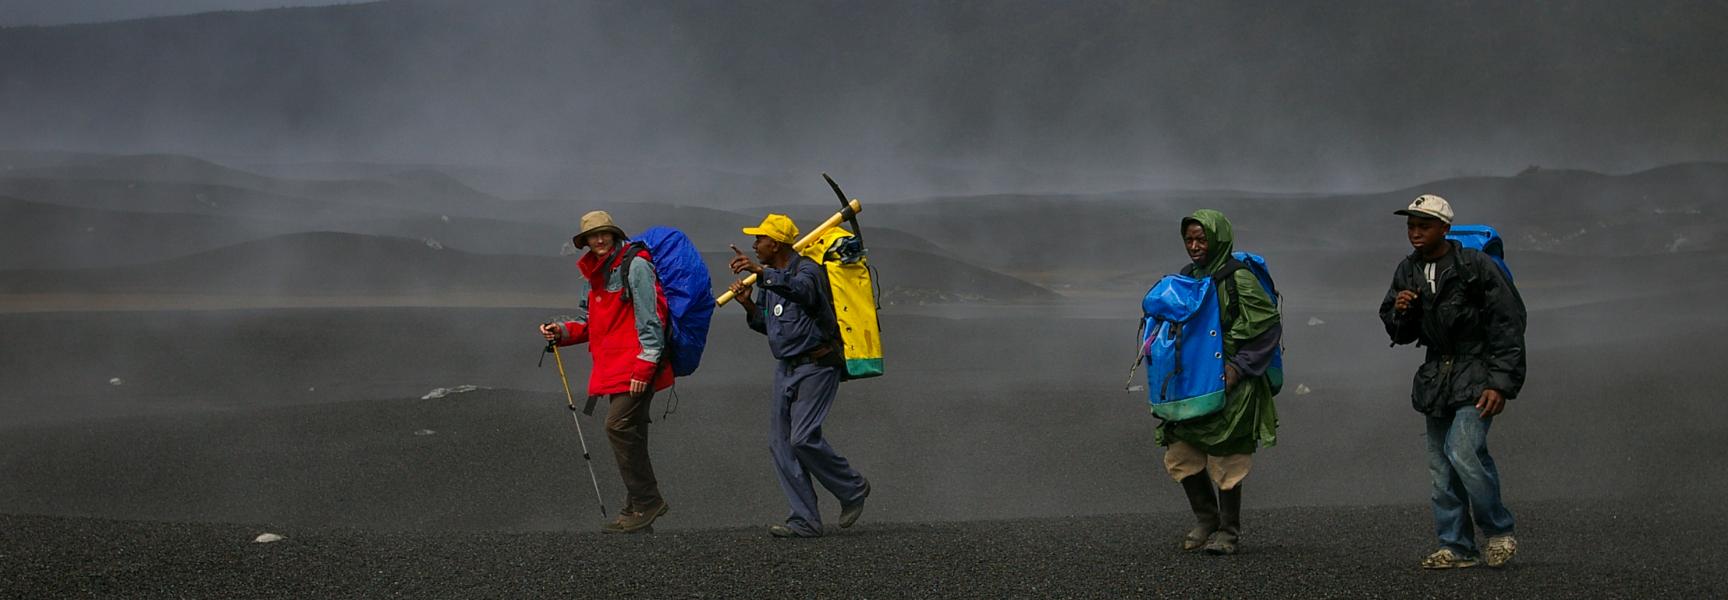 Des hommes marchant dans une zone volcanique aux Comores